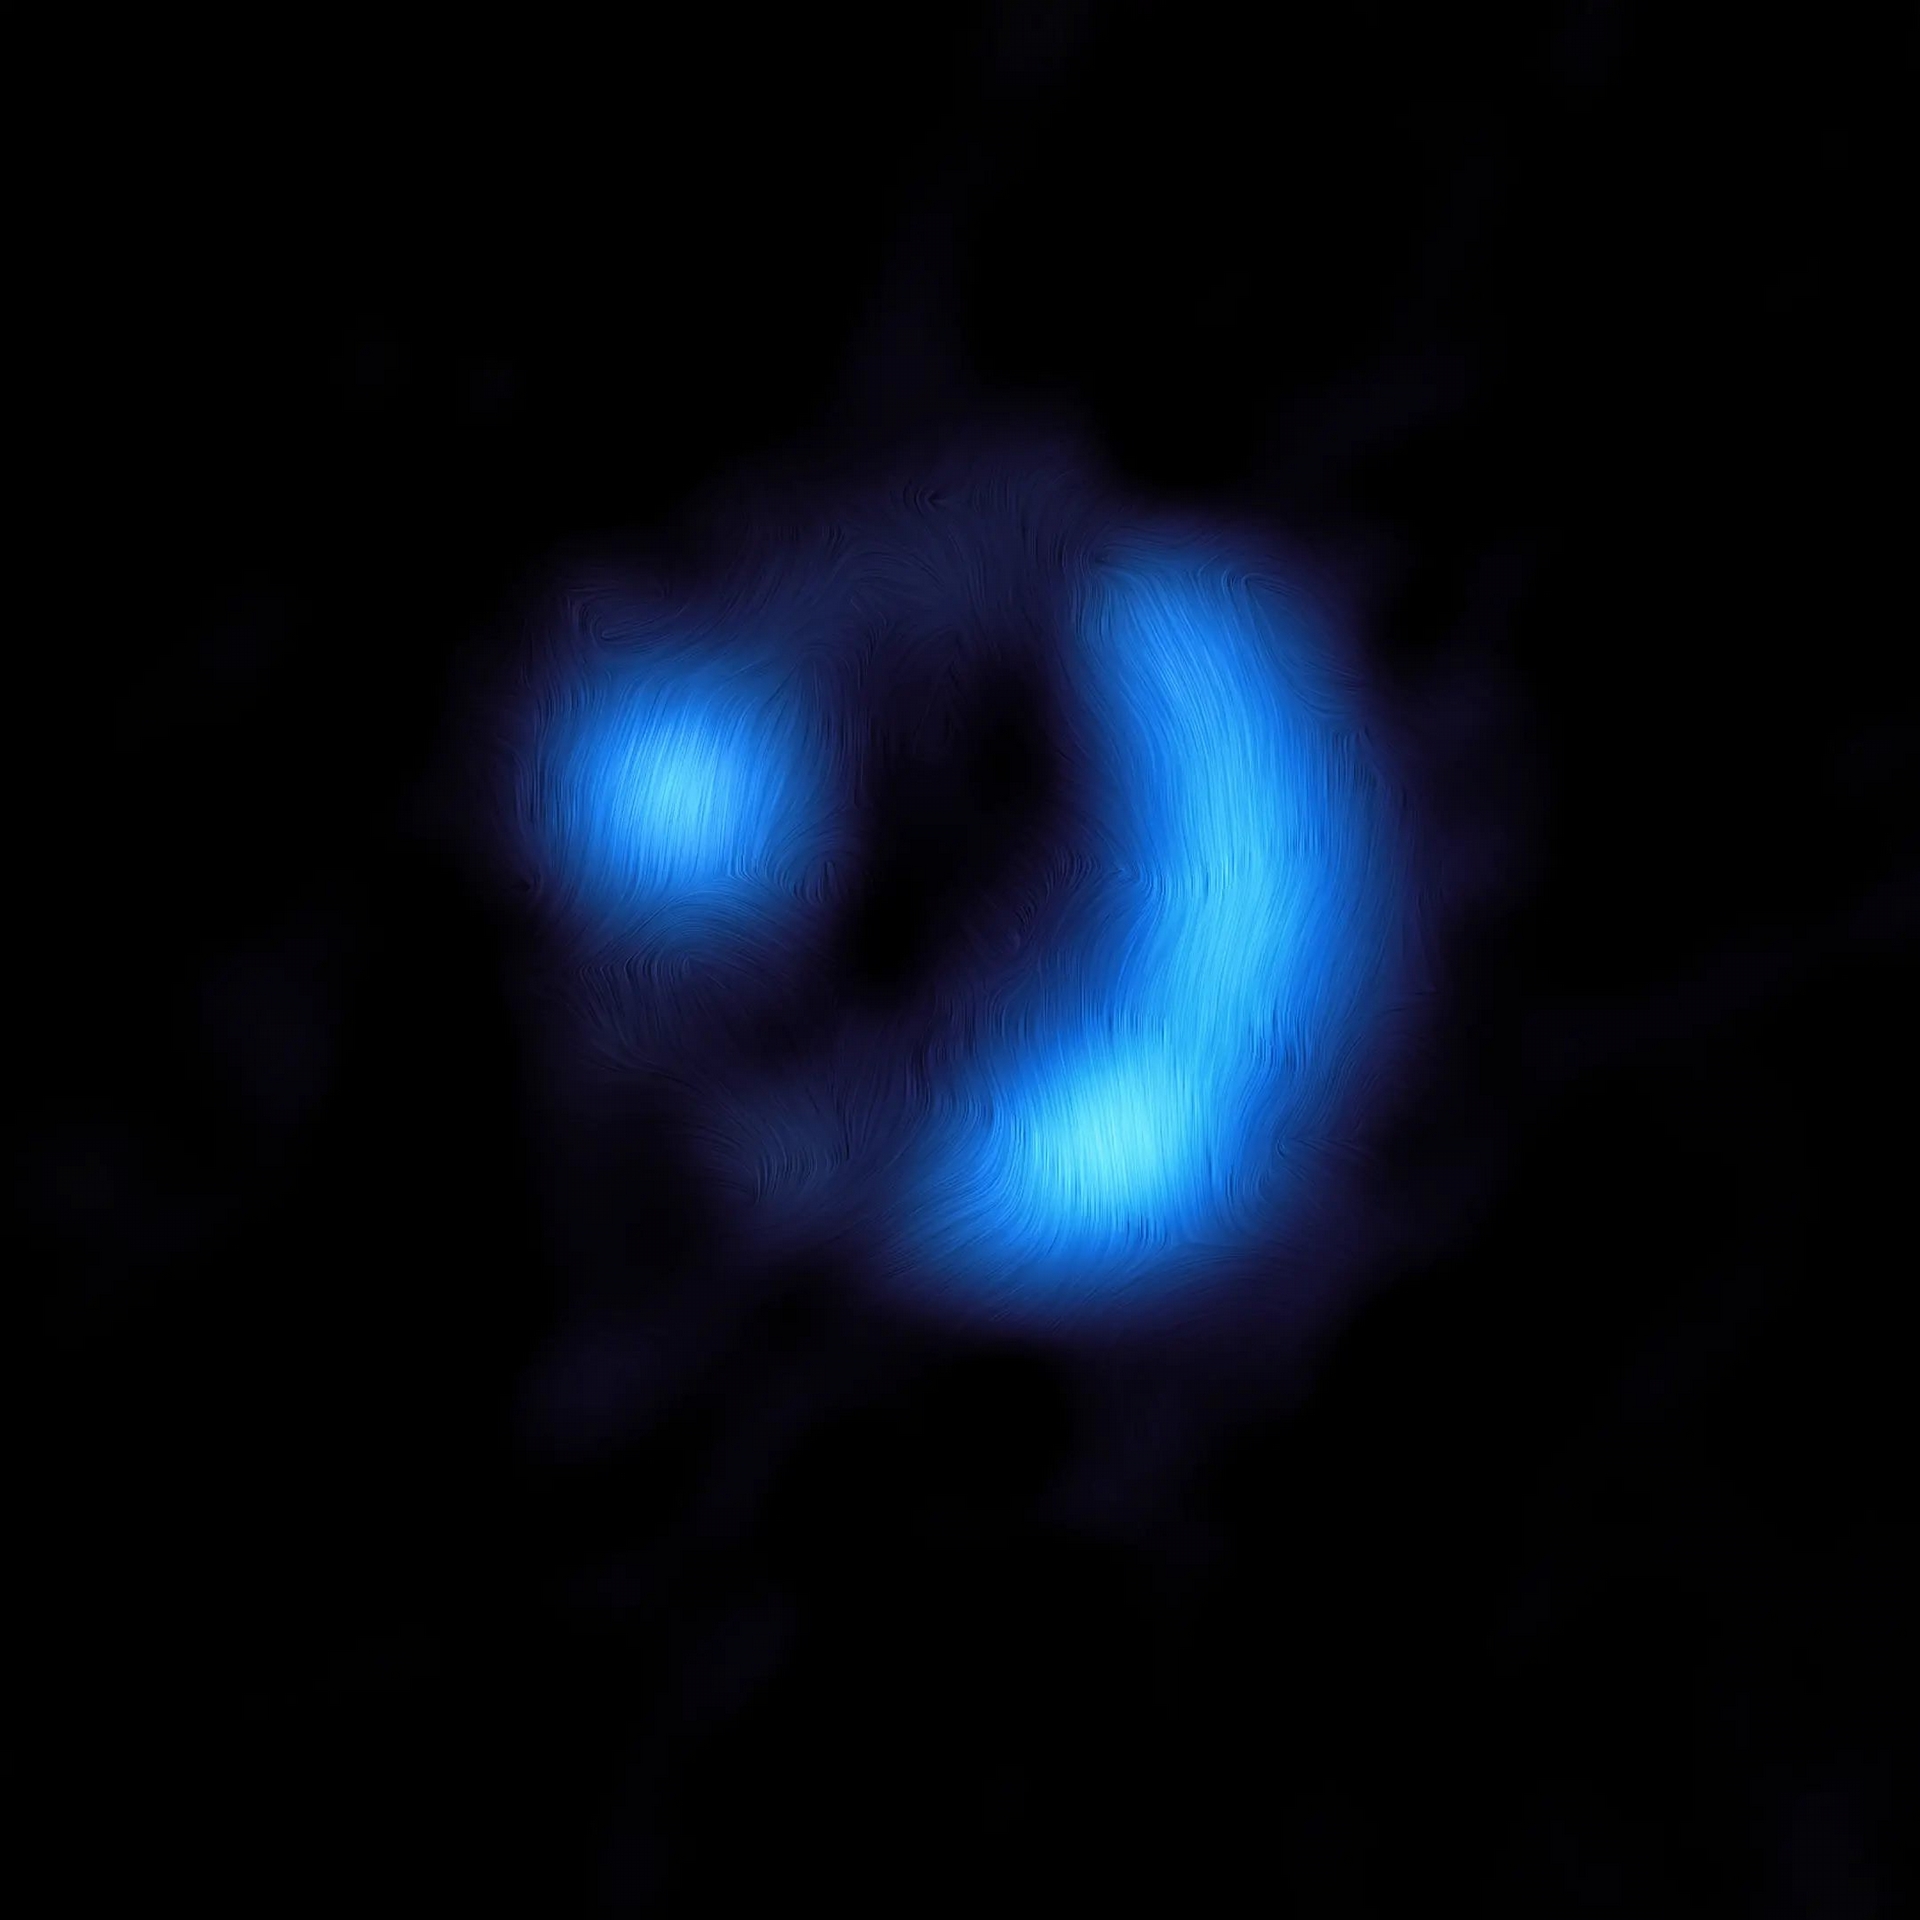 影像中顯示遙遠的9io9星系中磁場方向，9io9內的塵埃顆粒在某種程度上與星系的磁場對齊，因此，它們會發出偏振光，這表示光波會沿著一個偏好方向而非隨機振盪。ALMA偵測到此偏振訊號，天文學家可以根據此訊號計算出磁場的方向，此處顯示的是疊加在ALMA影像上的曲線。圖片來源：ALMA (ESO/NAOJ/NRAO)/J. Geach et al.